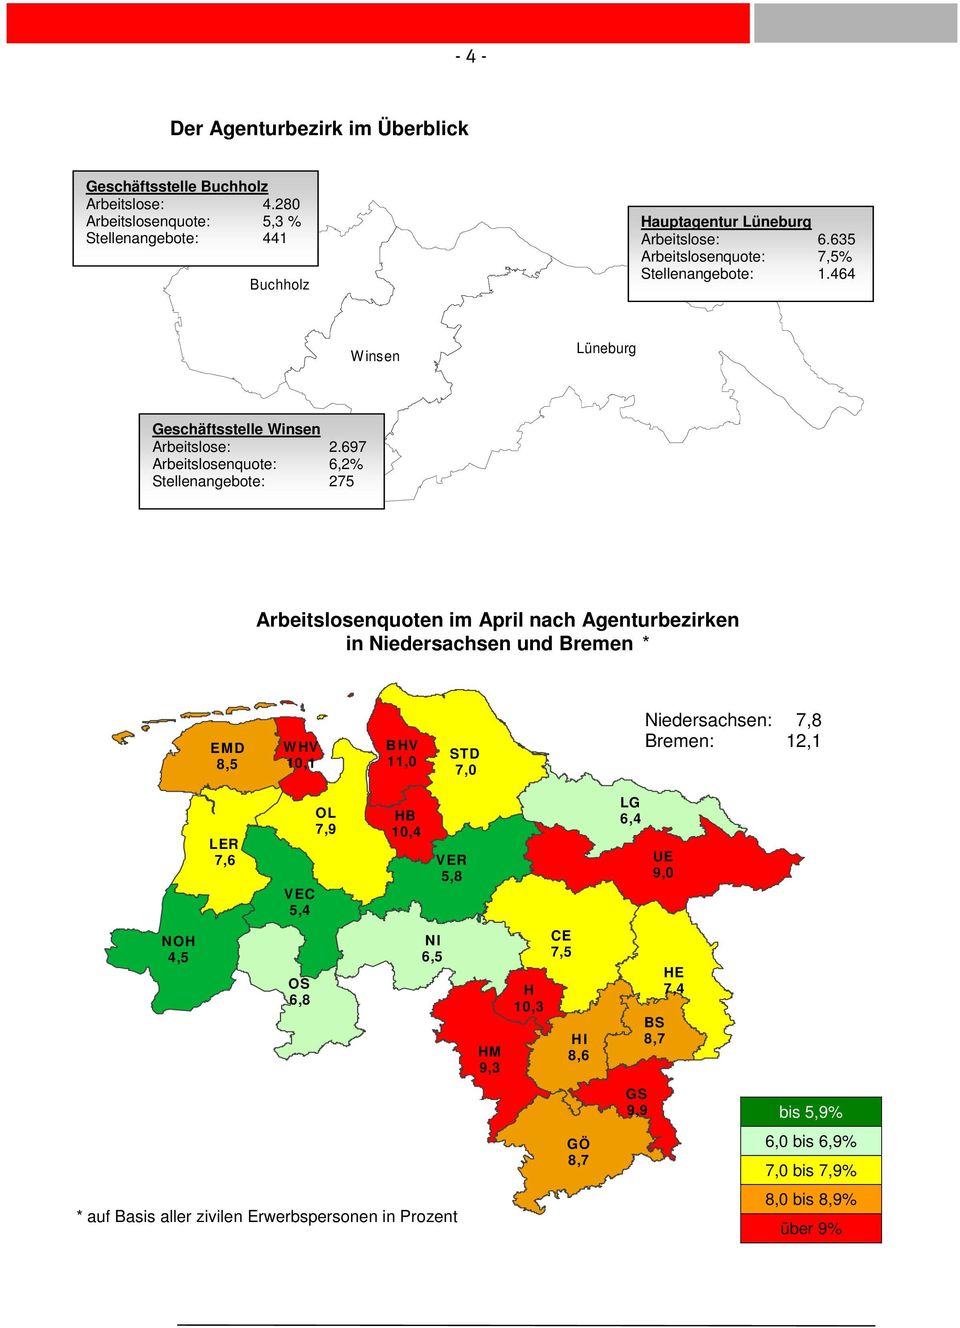 697 Arbeitslosenquote: 6,2% Stellenangebote: 275 Arbeitslosenquoten im April nach Agenturbezirken in Niedersachsen und Bremen * EMD 8,5 W HV 10,1 B HV 11,0 STD 7,0 Niedersachsen: